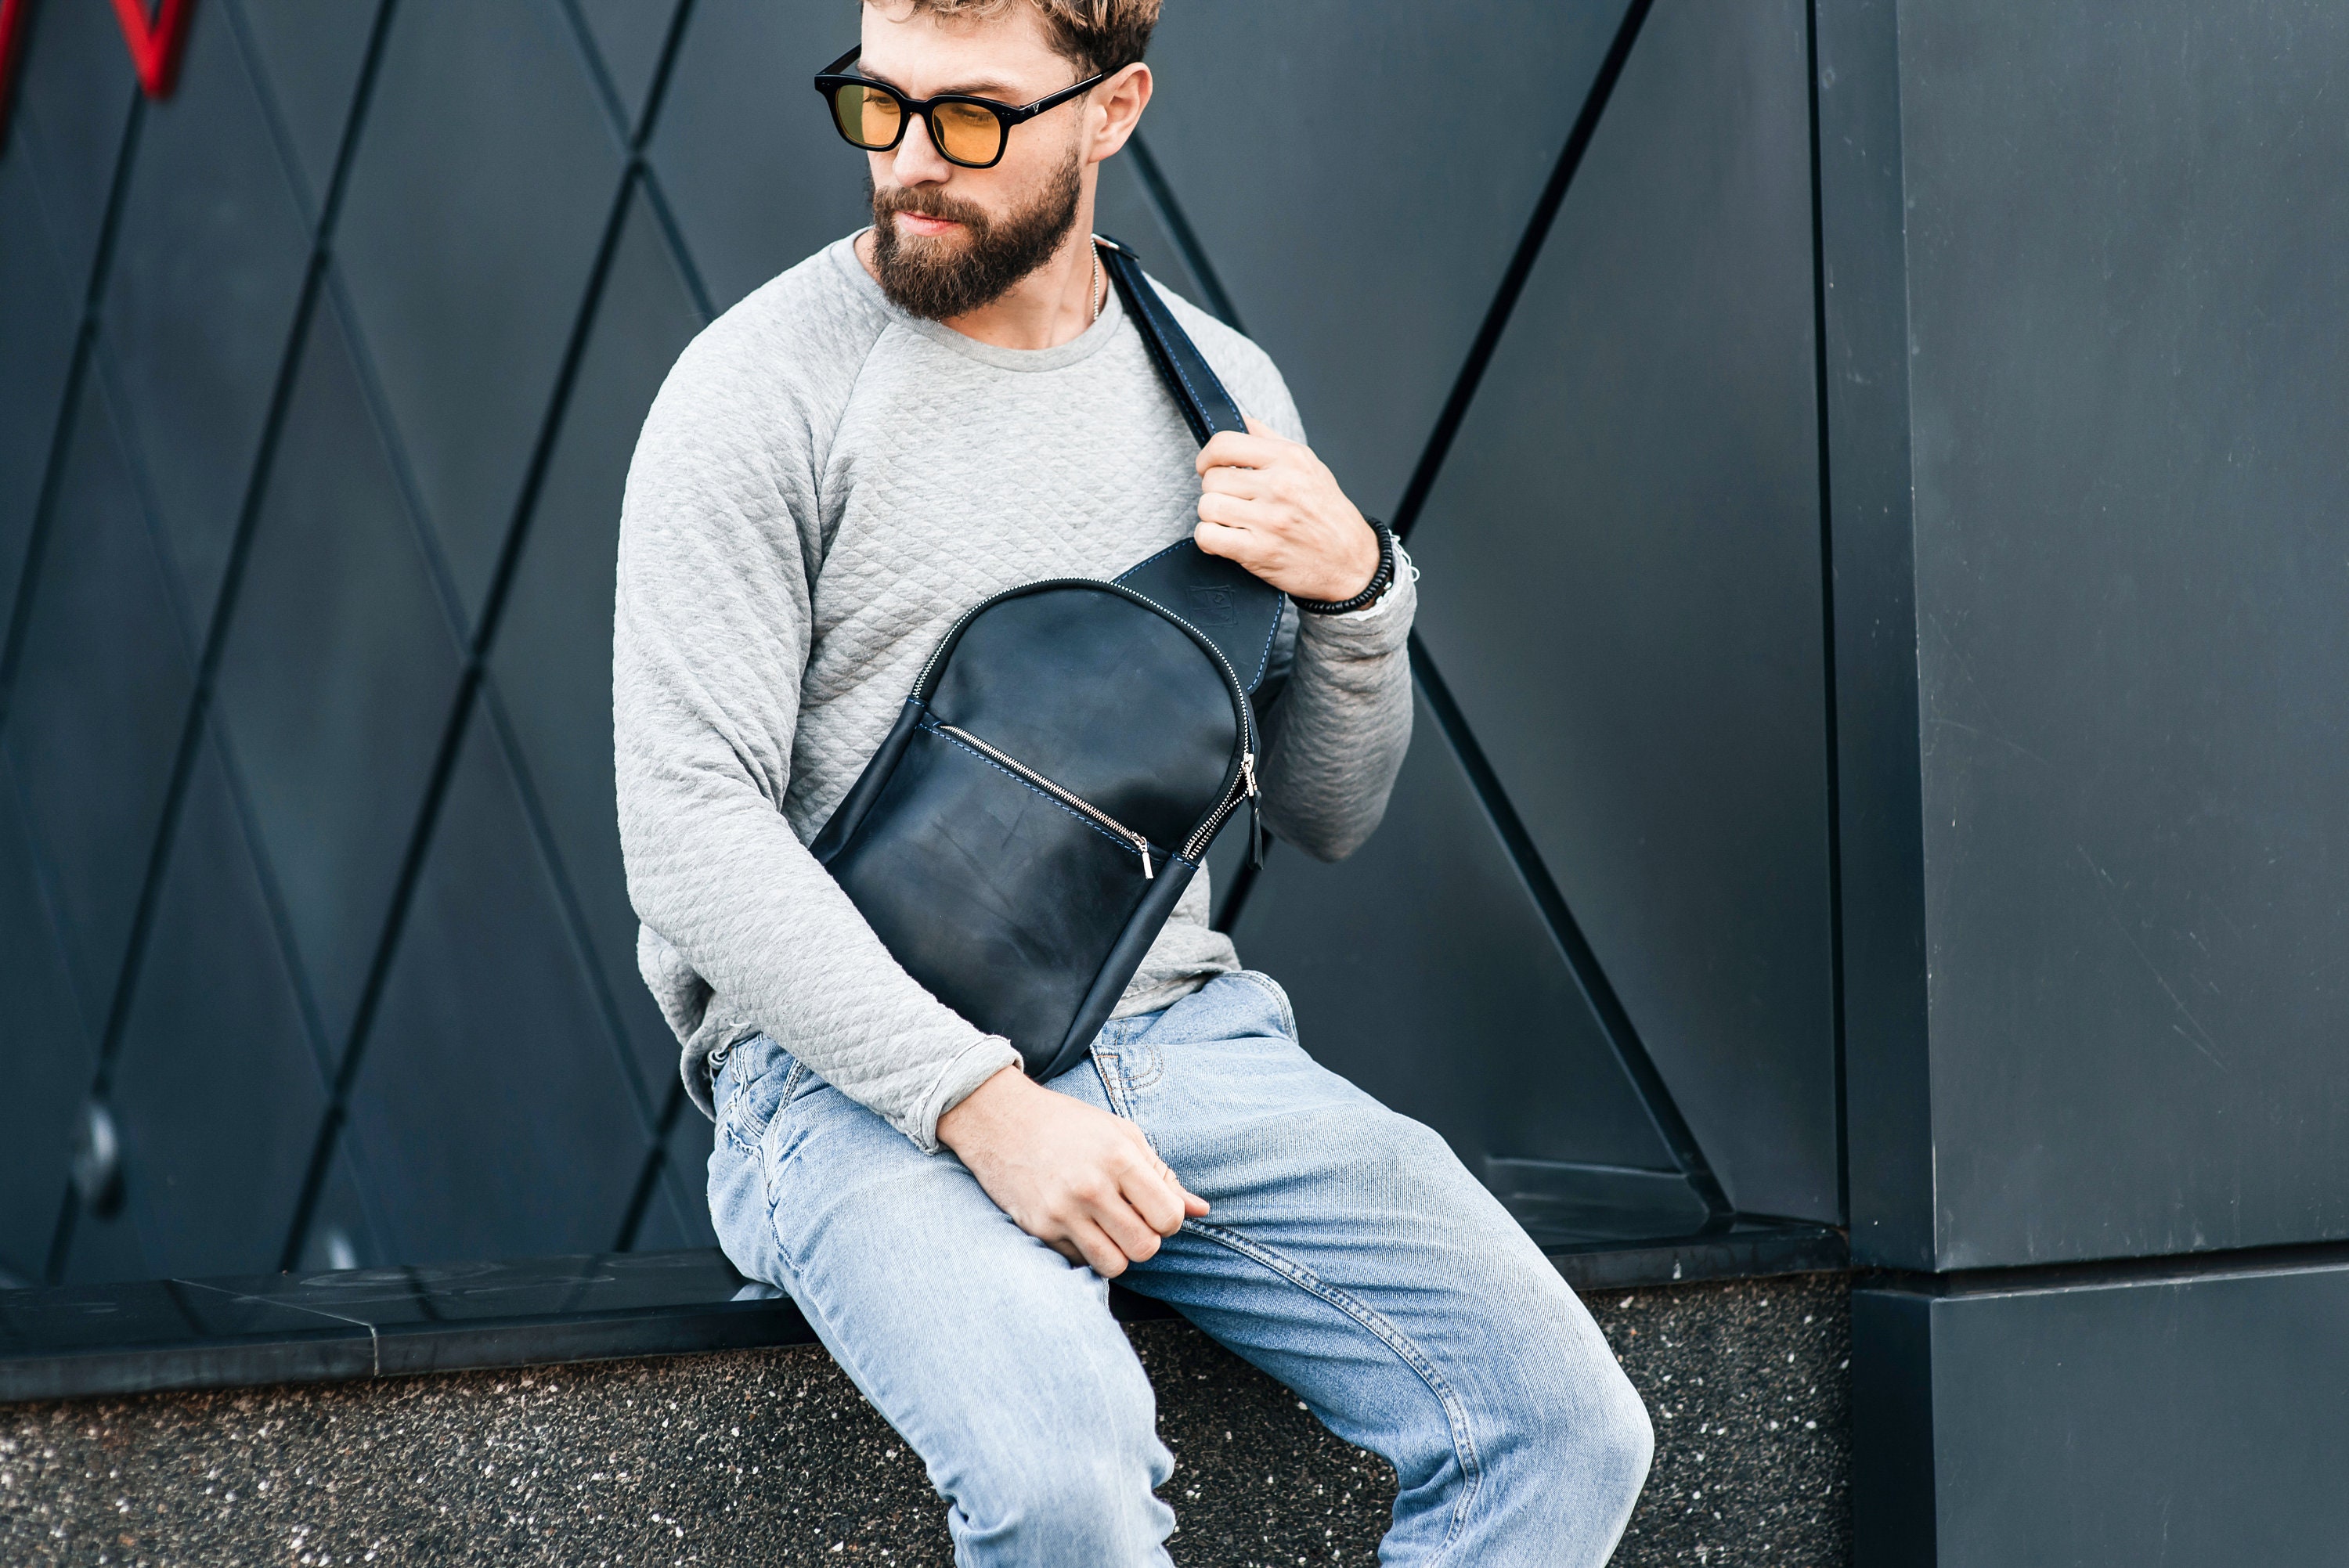 Black Sling Bag Small Travel Backpack Bag City Shoulder Bag 